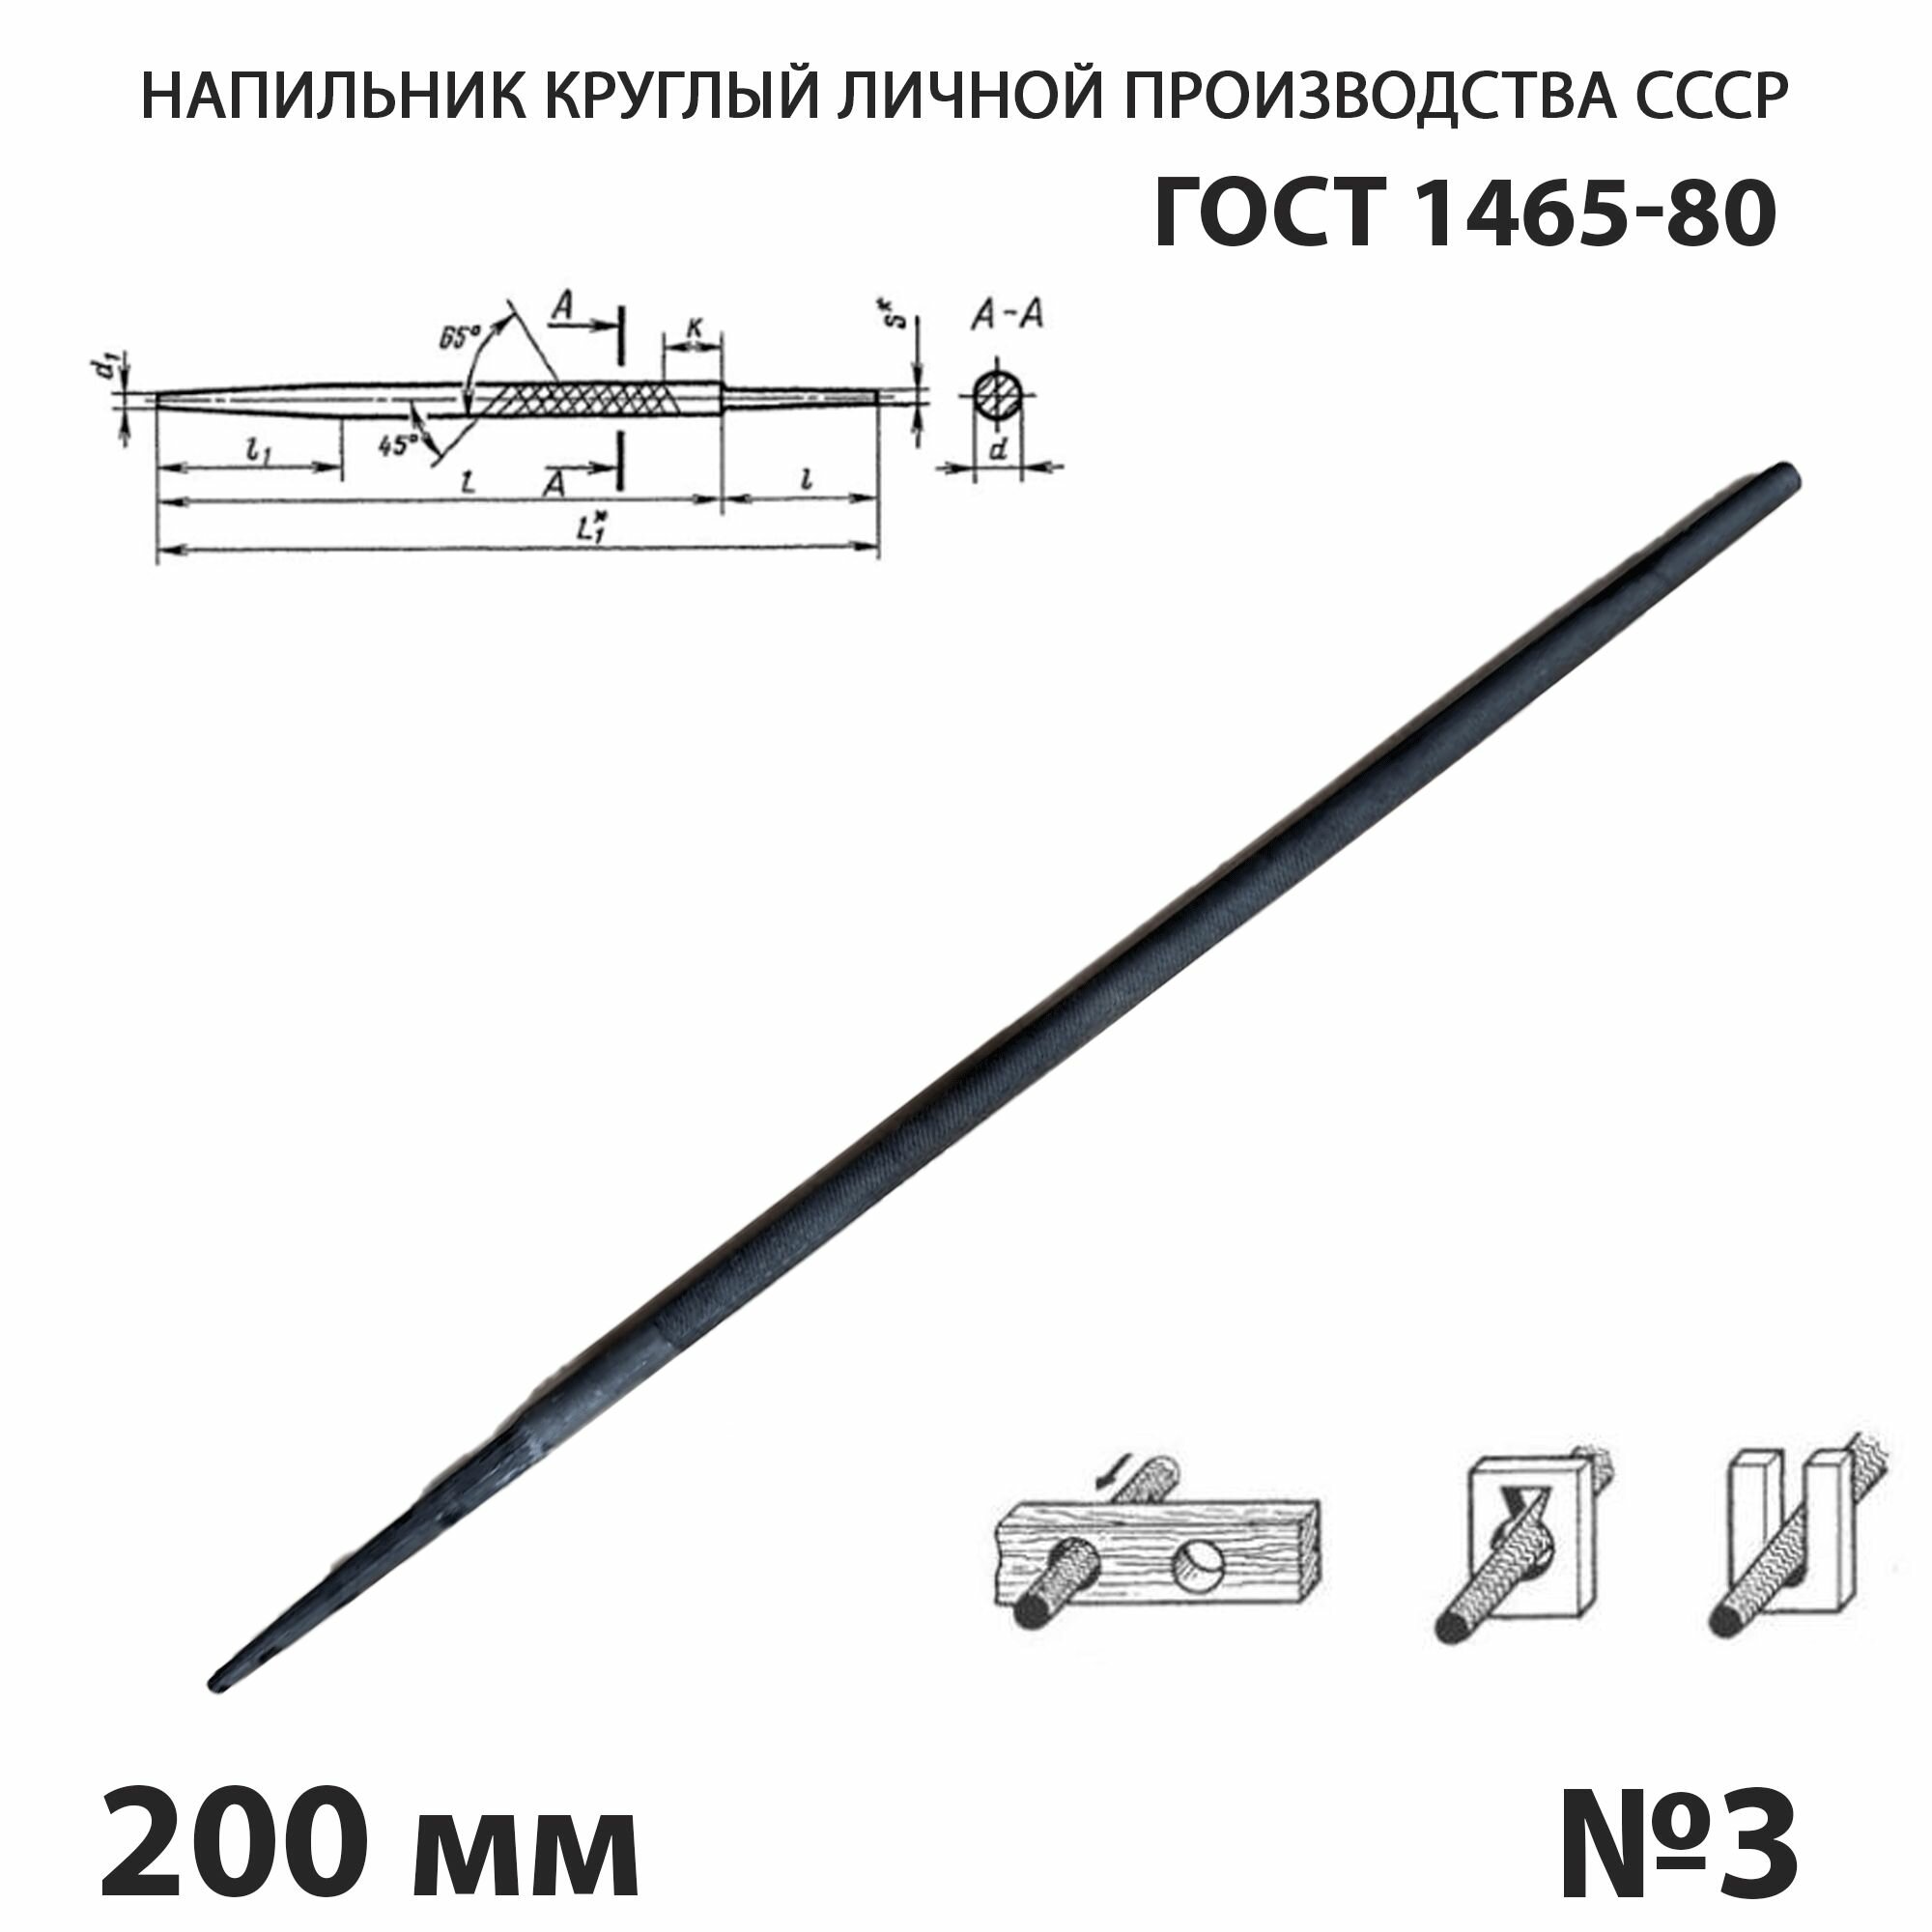 Напильник по металлу круглый 200 мм №3 СССР ГОСТ 1465-80